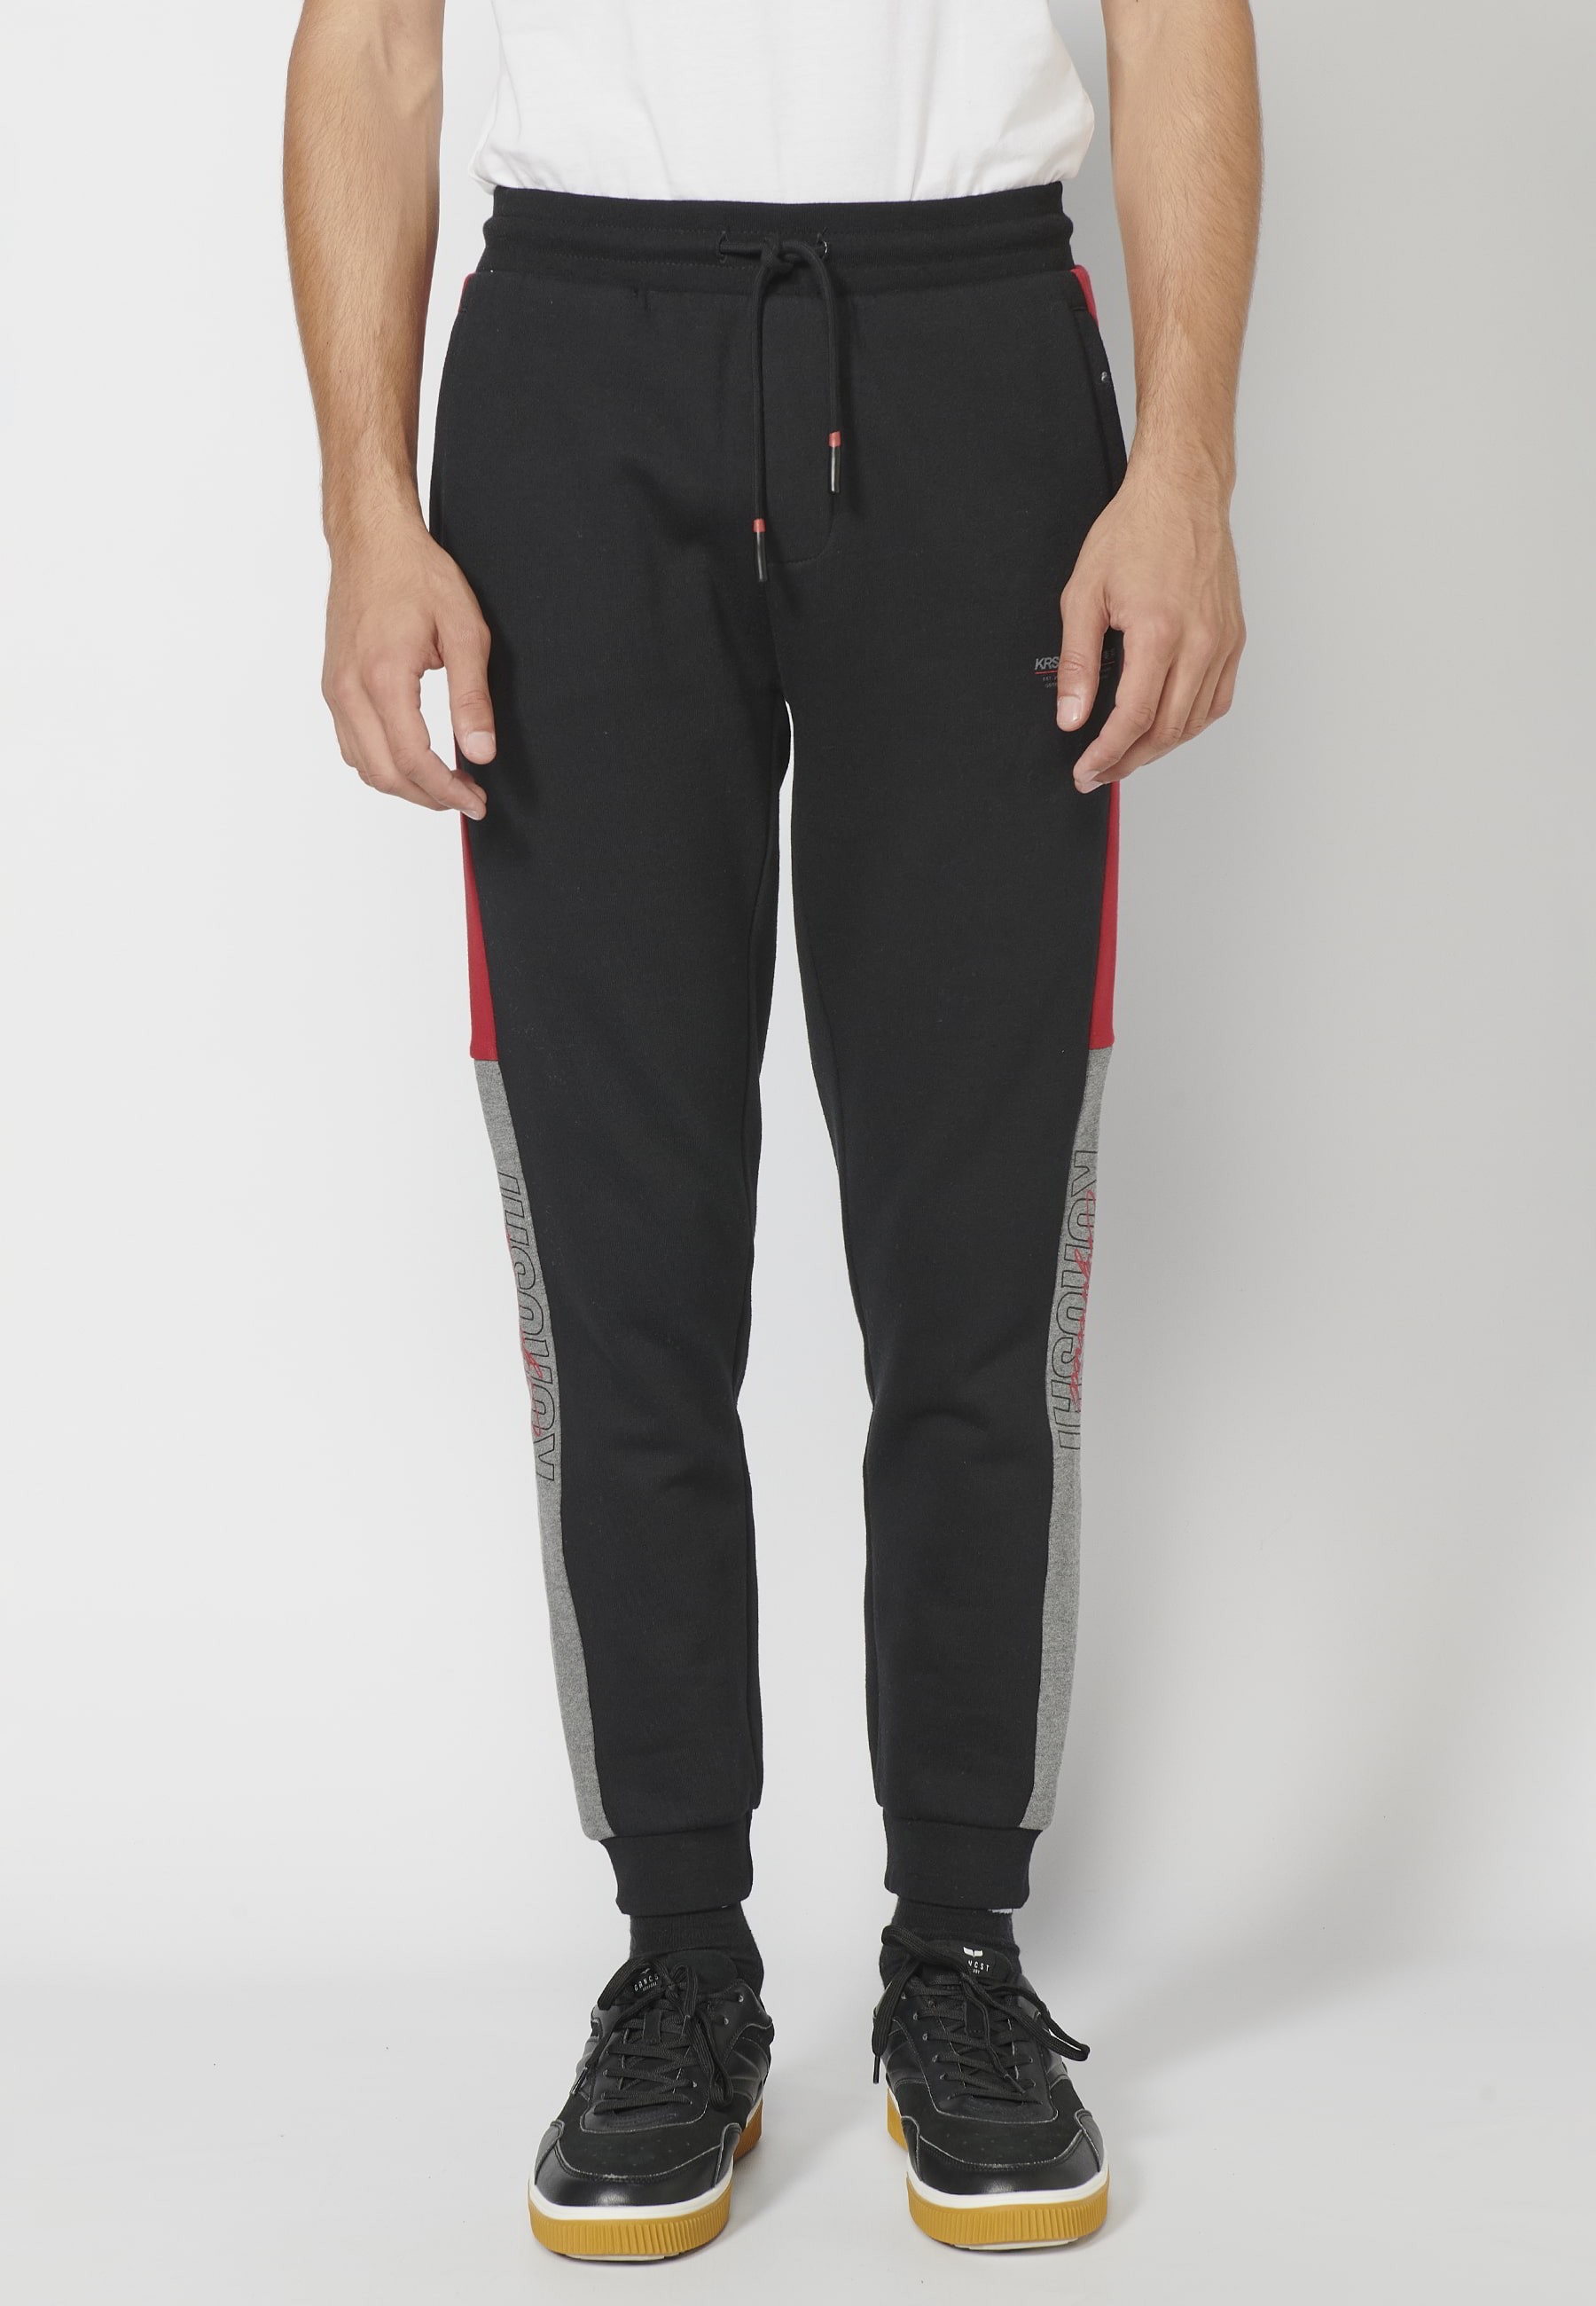 Long jogger pants with adjustable elastic waist, side detail, black color for Men